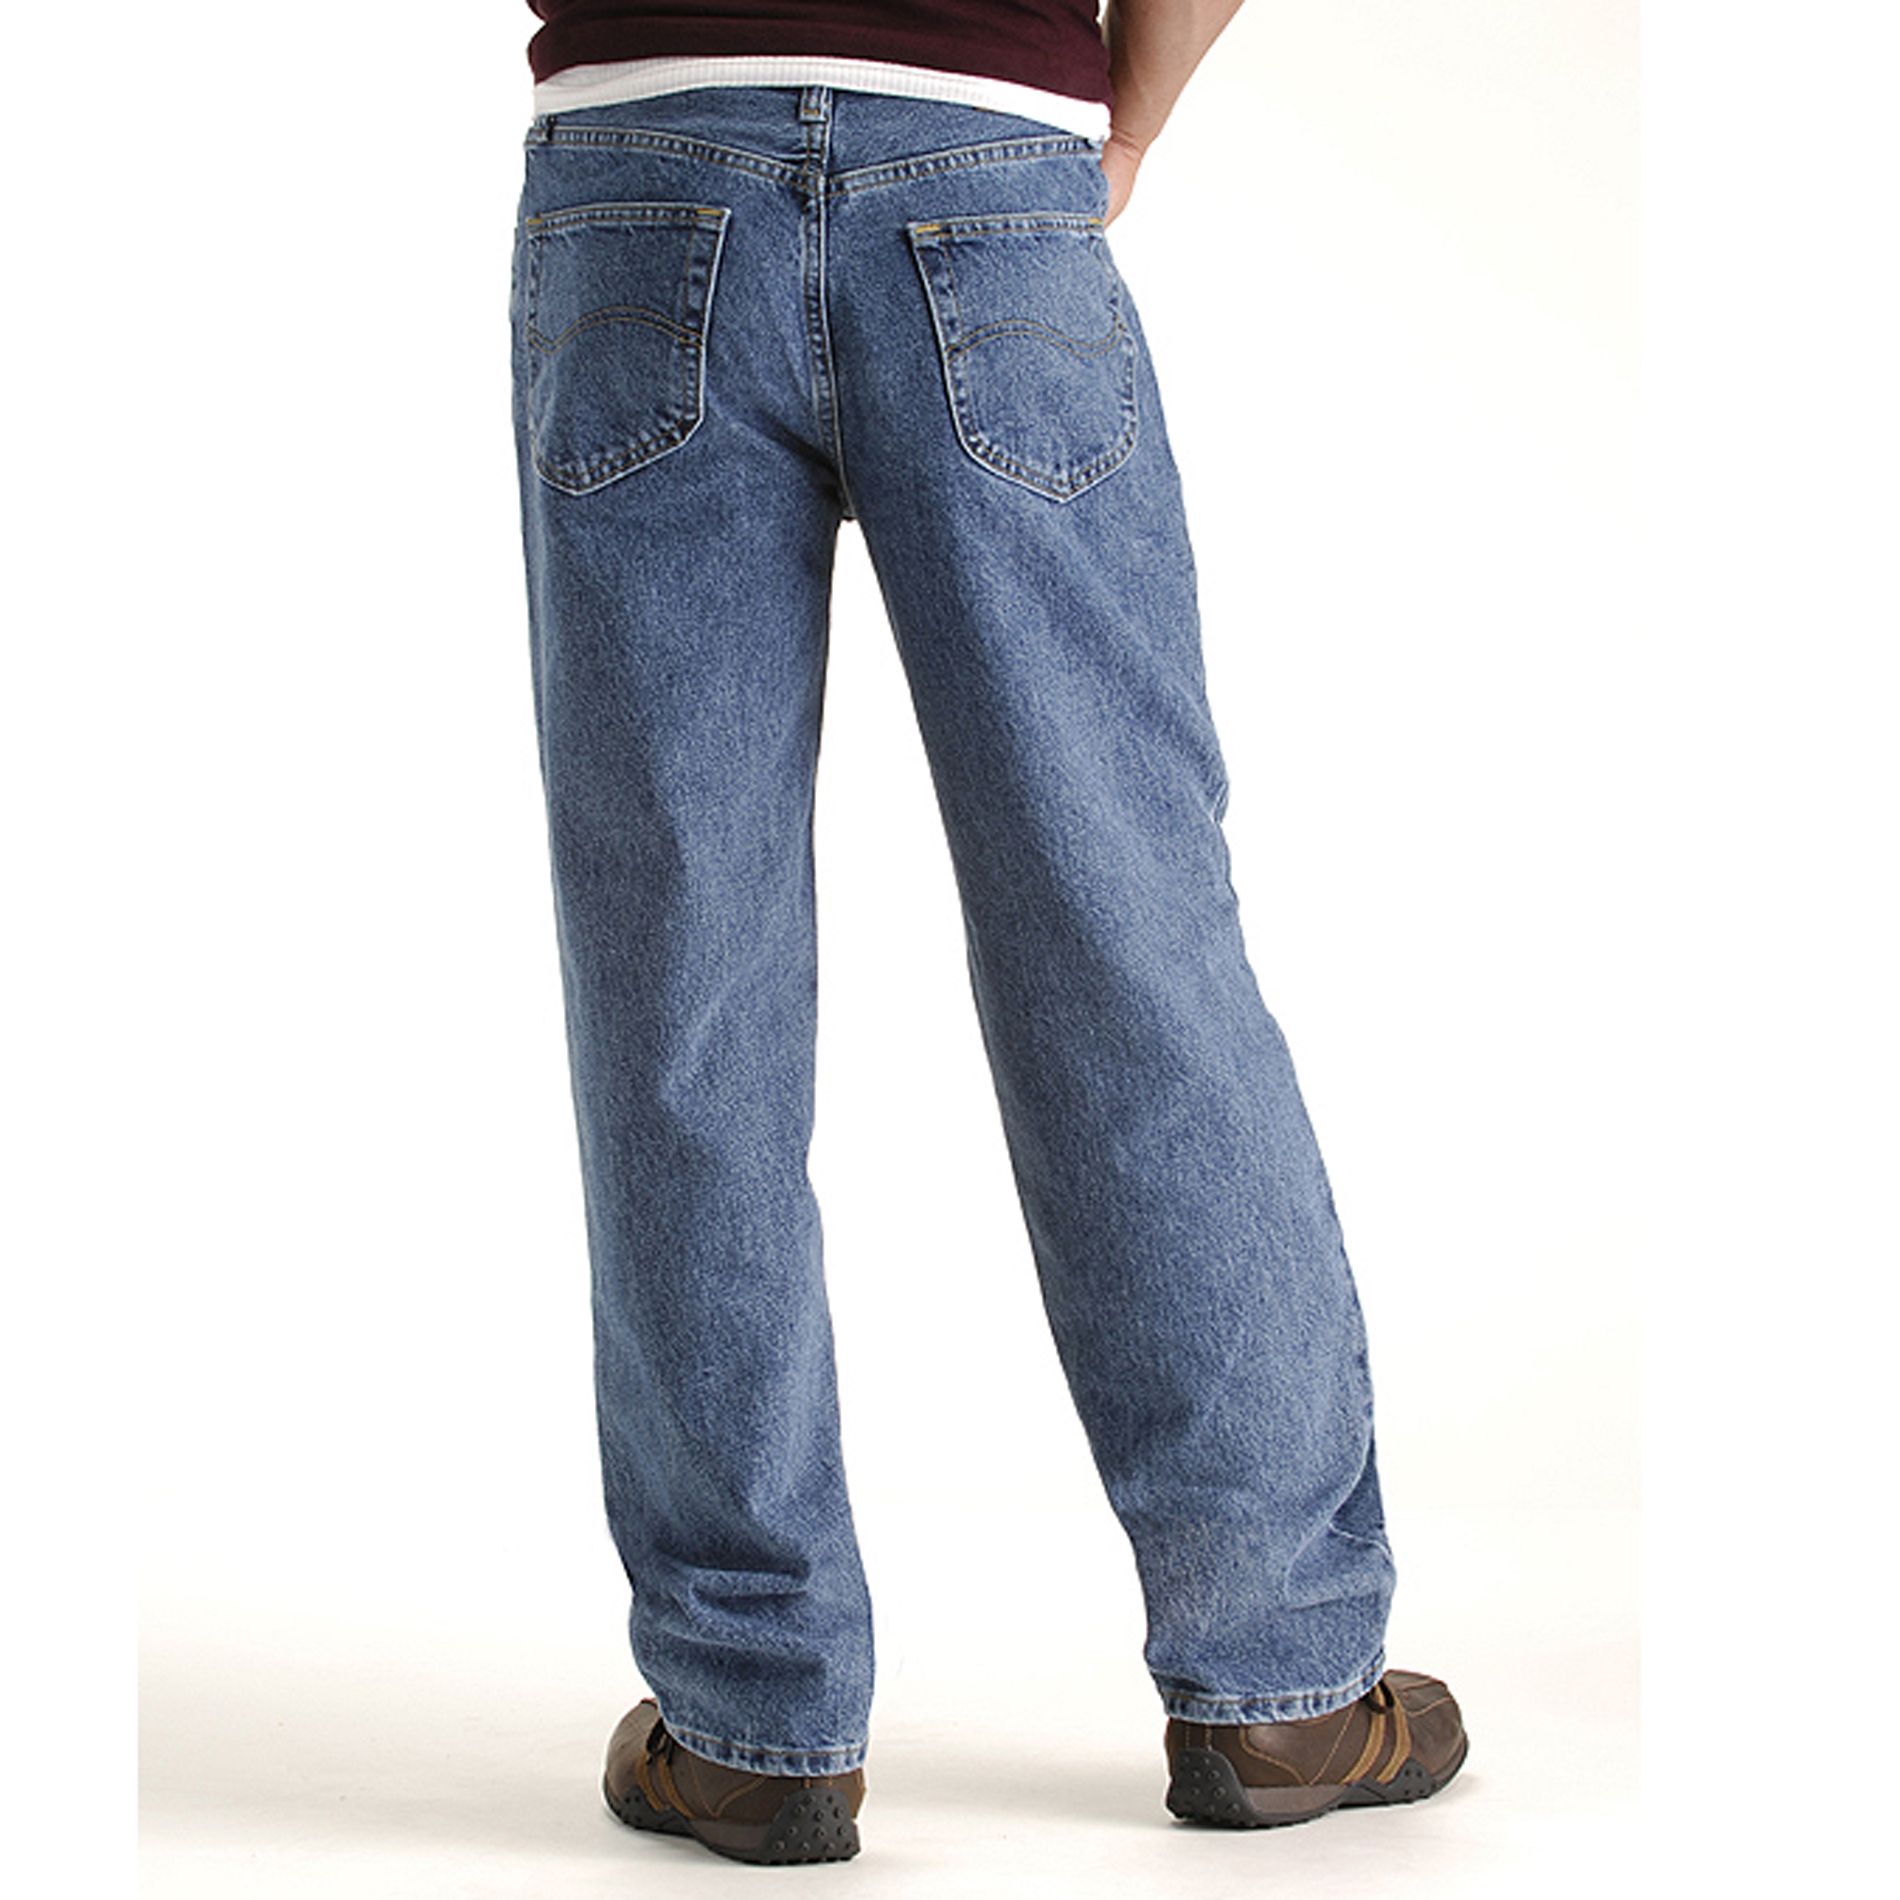 wrangler men's relaxed fit jeans